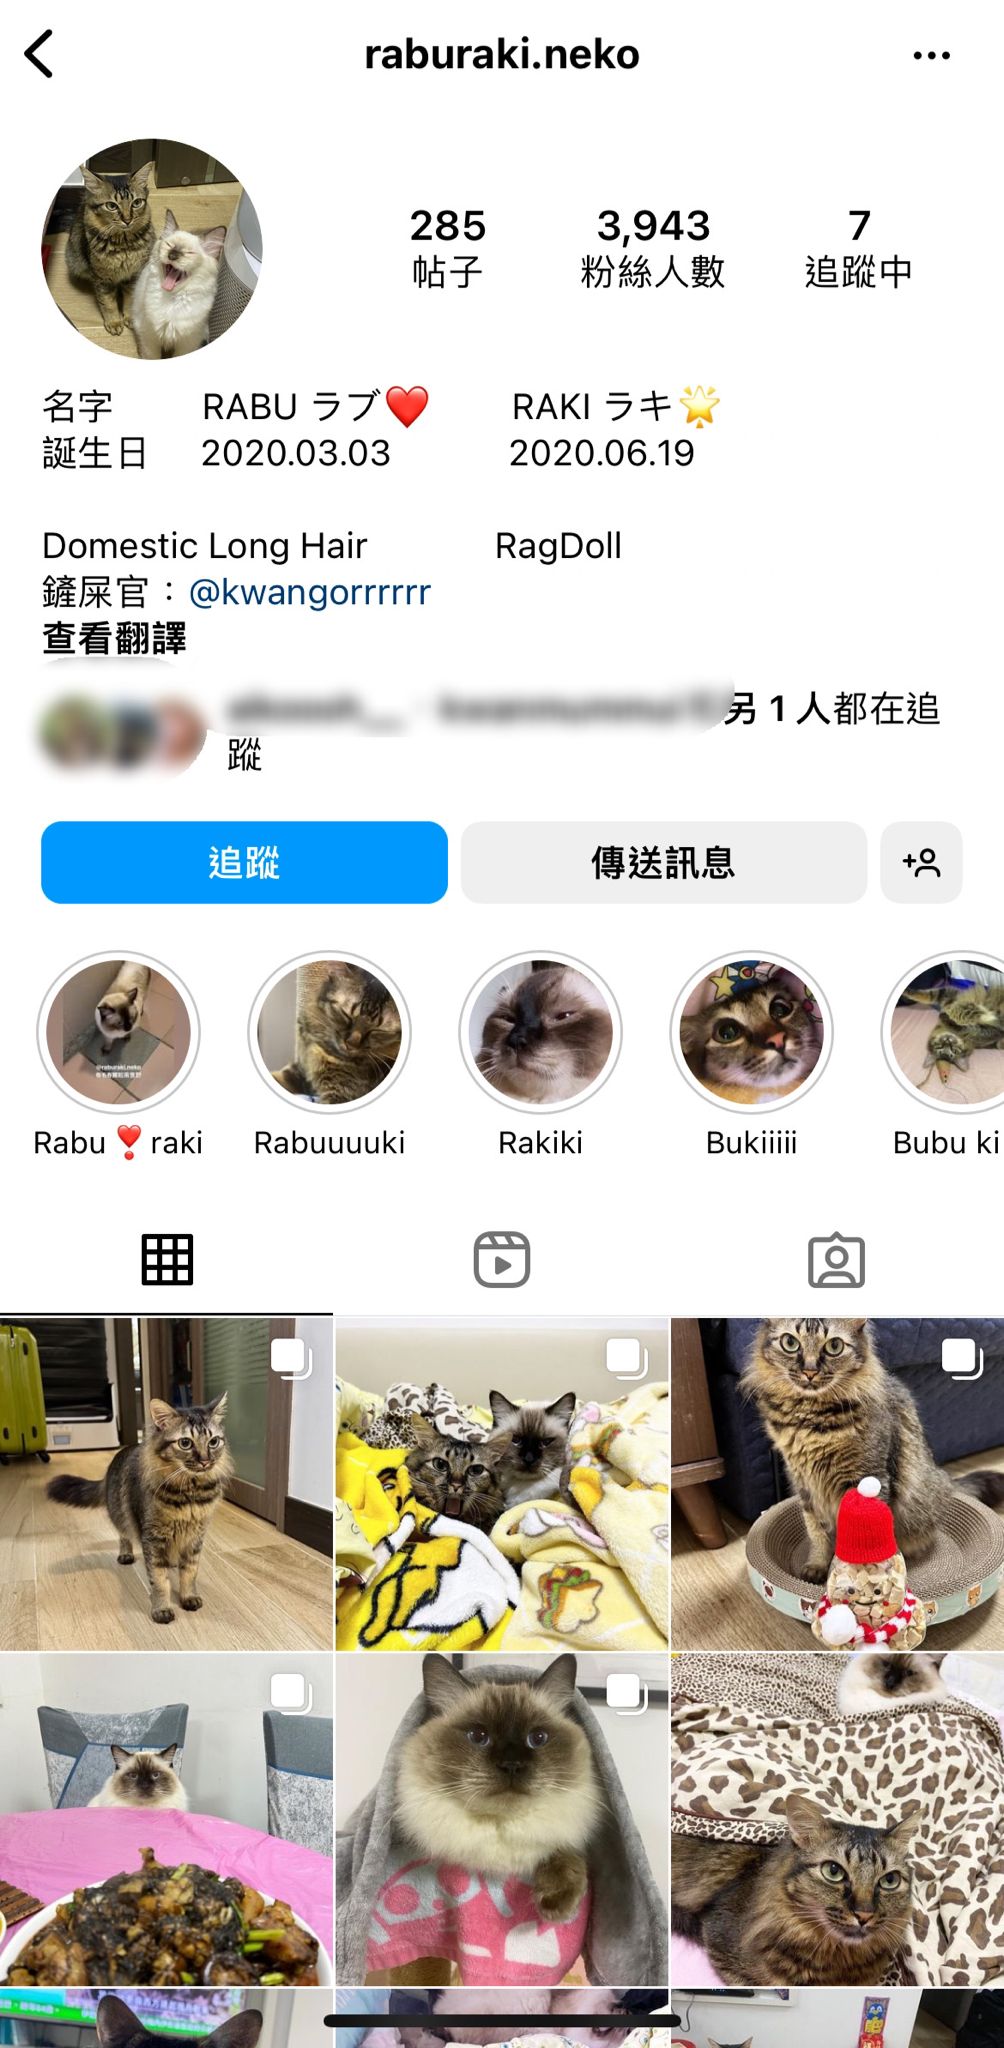 坤哥仲為愛貓開設Instagram帳戶。